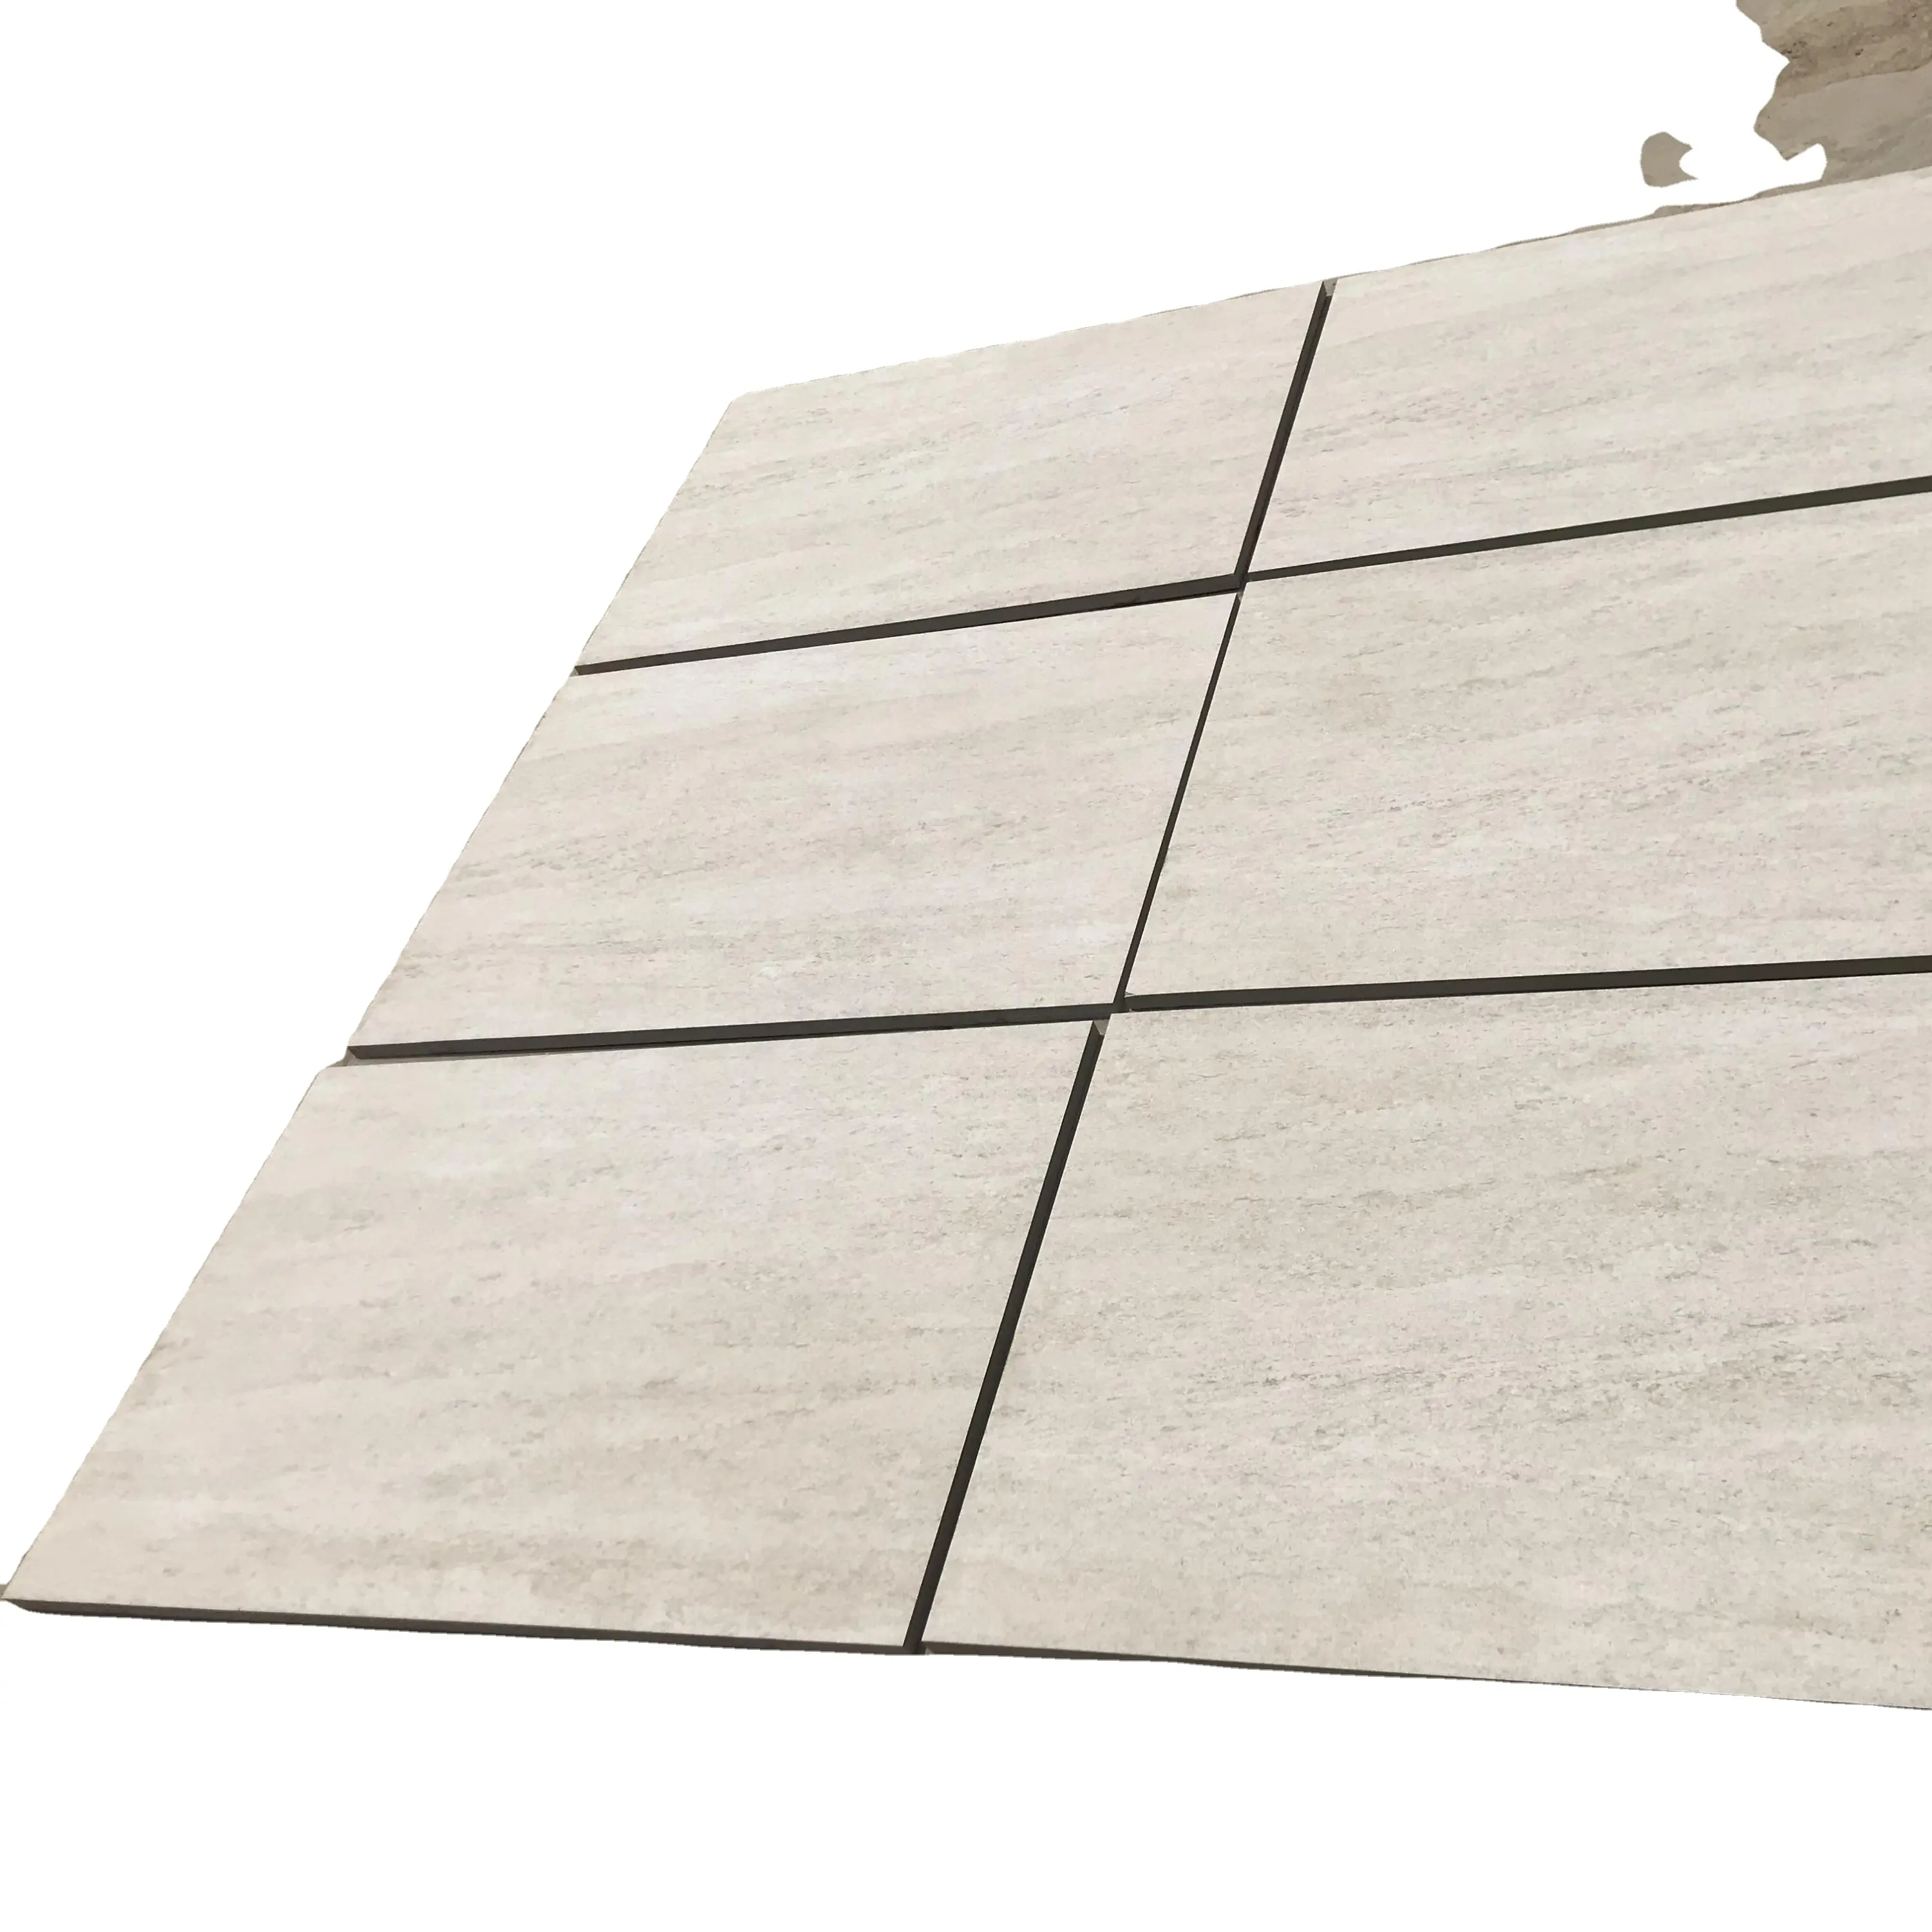 Piastrelle Beige in pietra 60x60cm spessore 20mm materiale da costruzione pavimentazione in pietra per esterni giardino R11 piastrelle per pavimenti in gres porcellanato